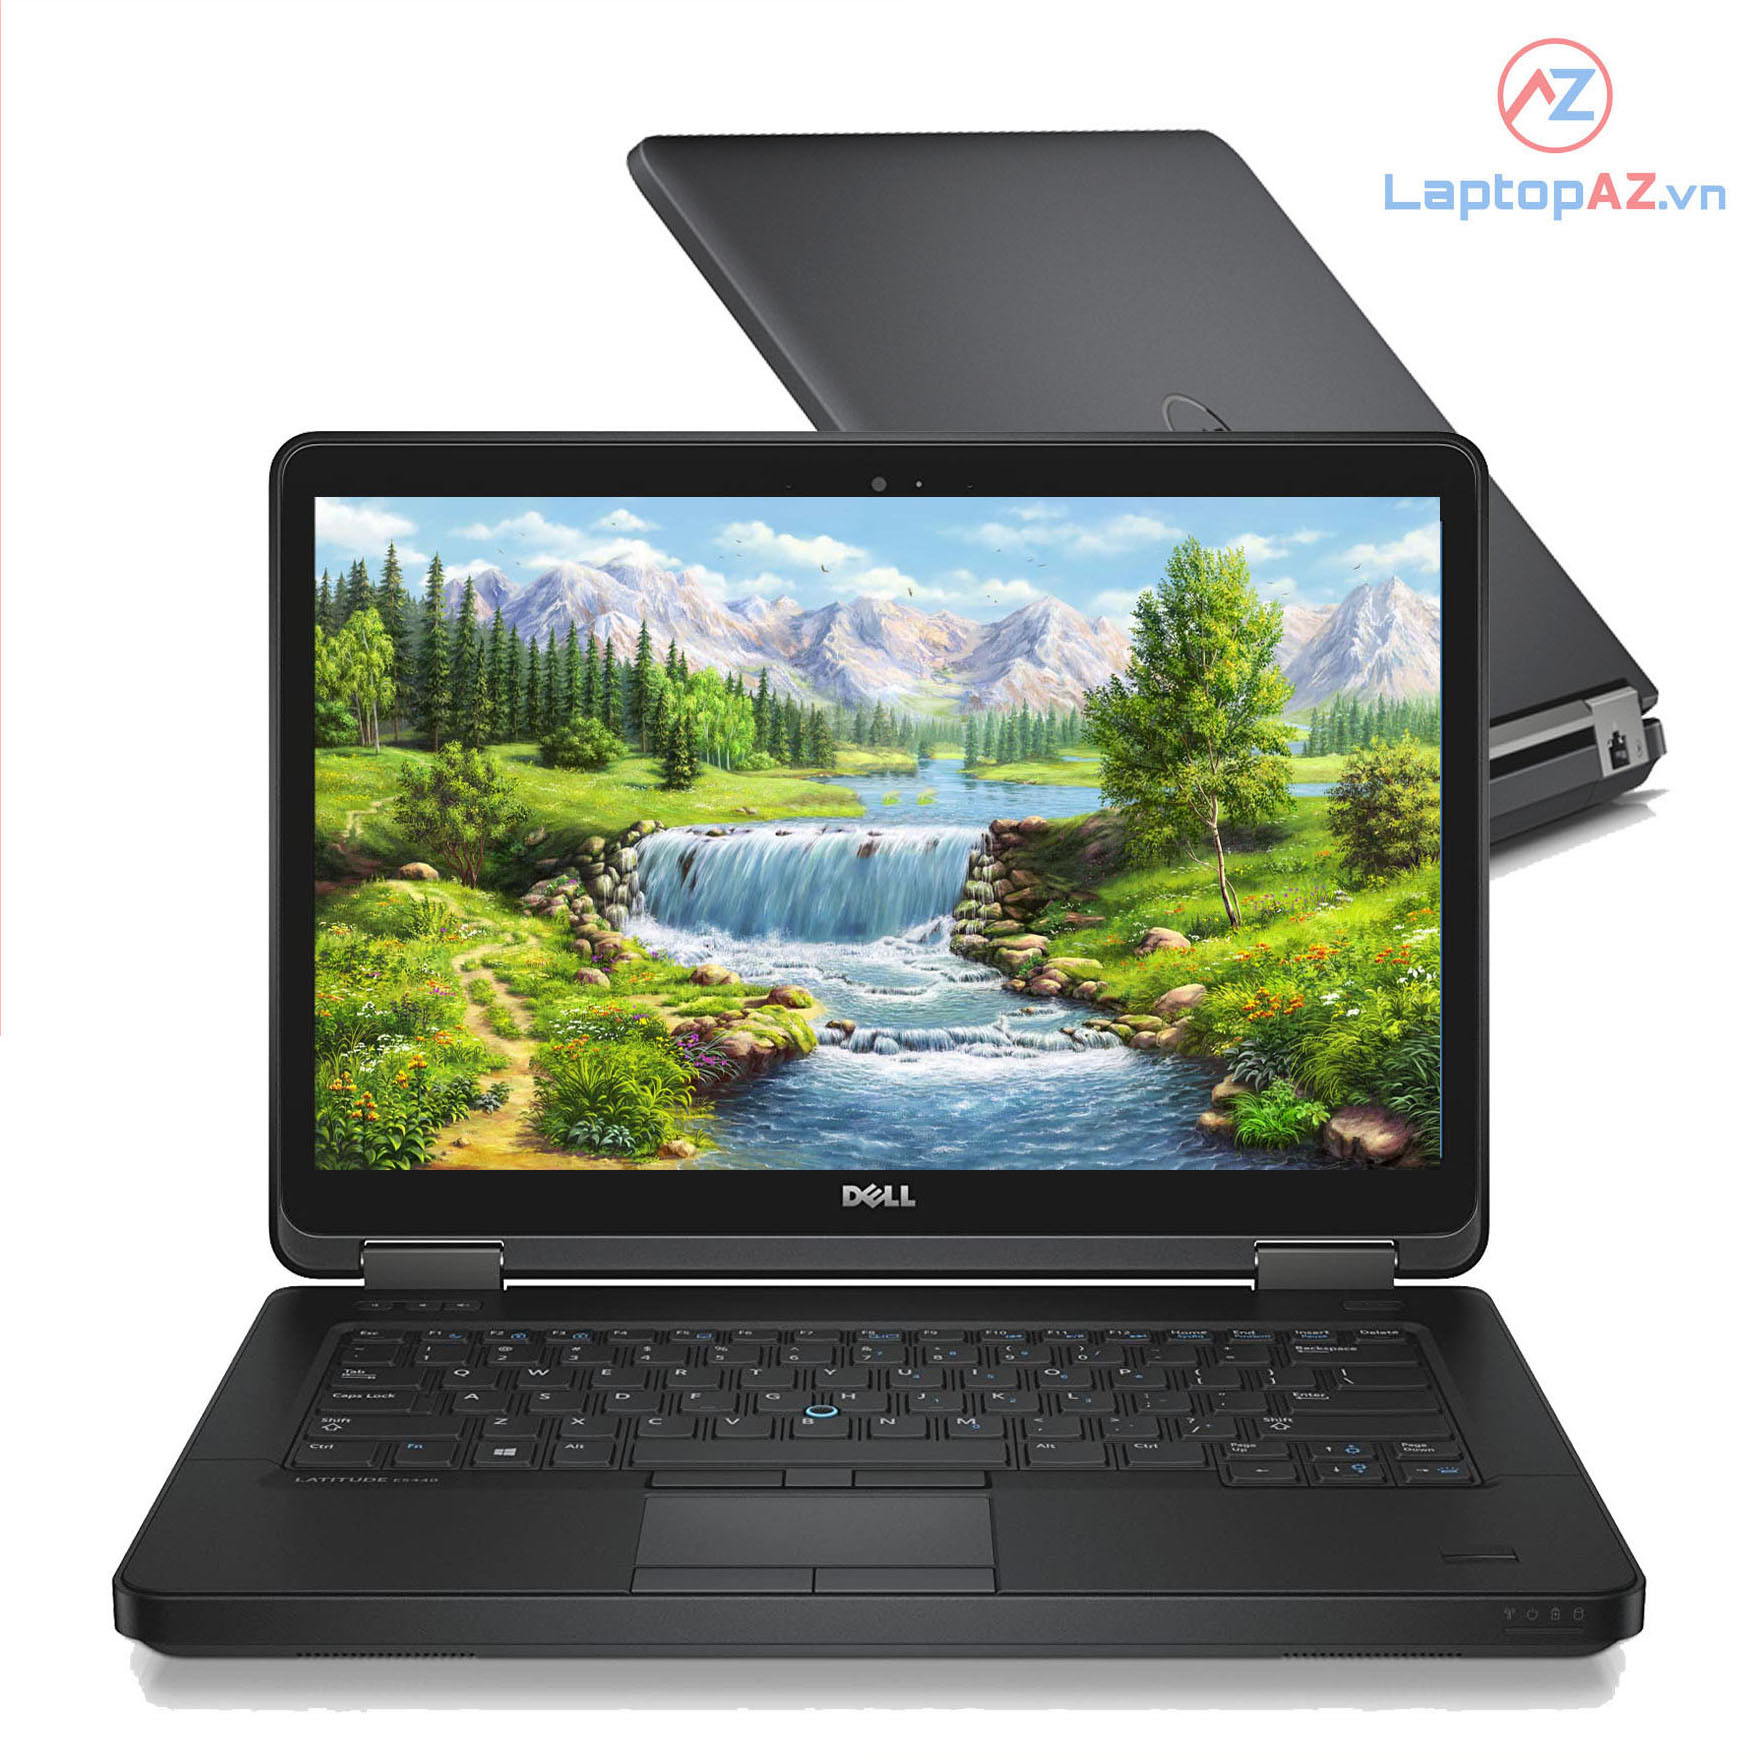 Laptop cũ Dell Latitude E5440 Core i5-4300U, 4GB, 128GB, HD 4400, 14 inch